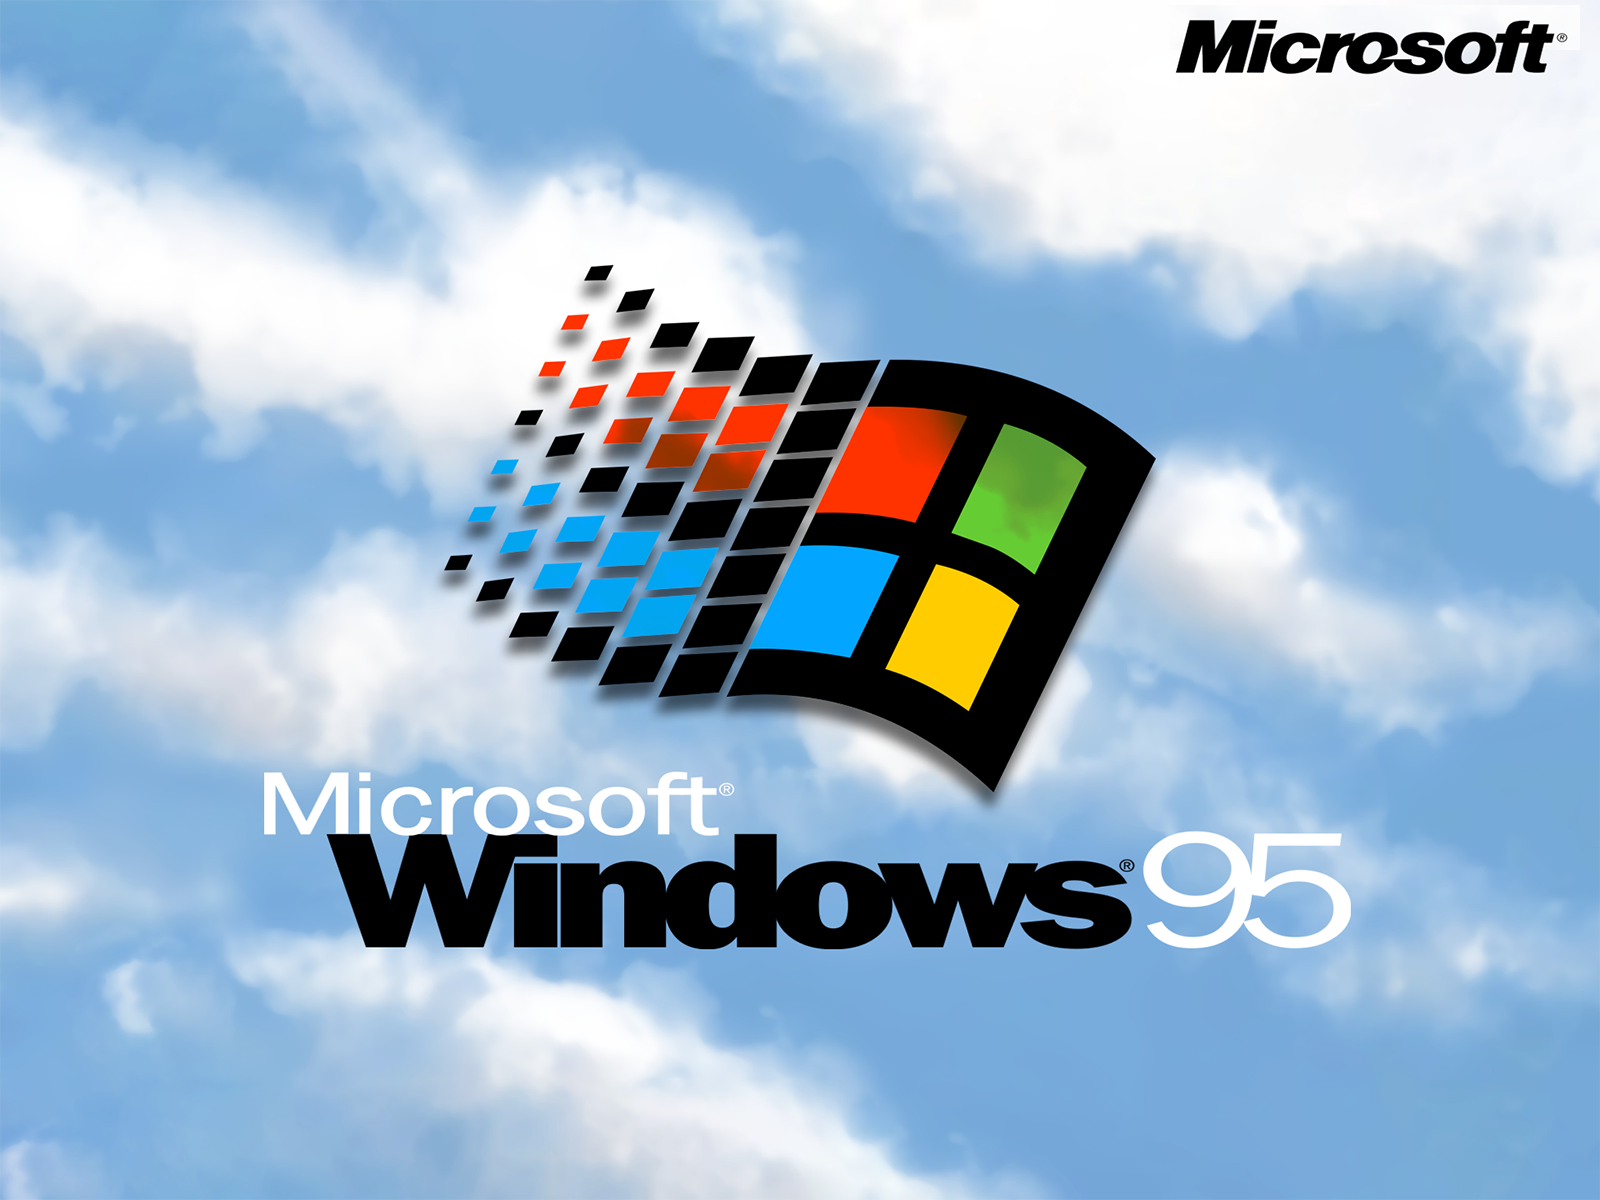 Виндовс 95. Обои Windows 95. Логотип виндовс 95. Windows 95 1995.